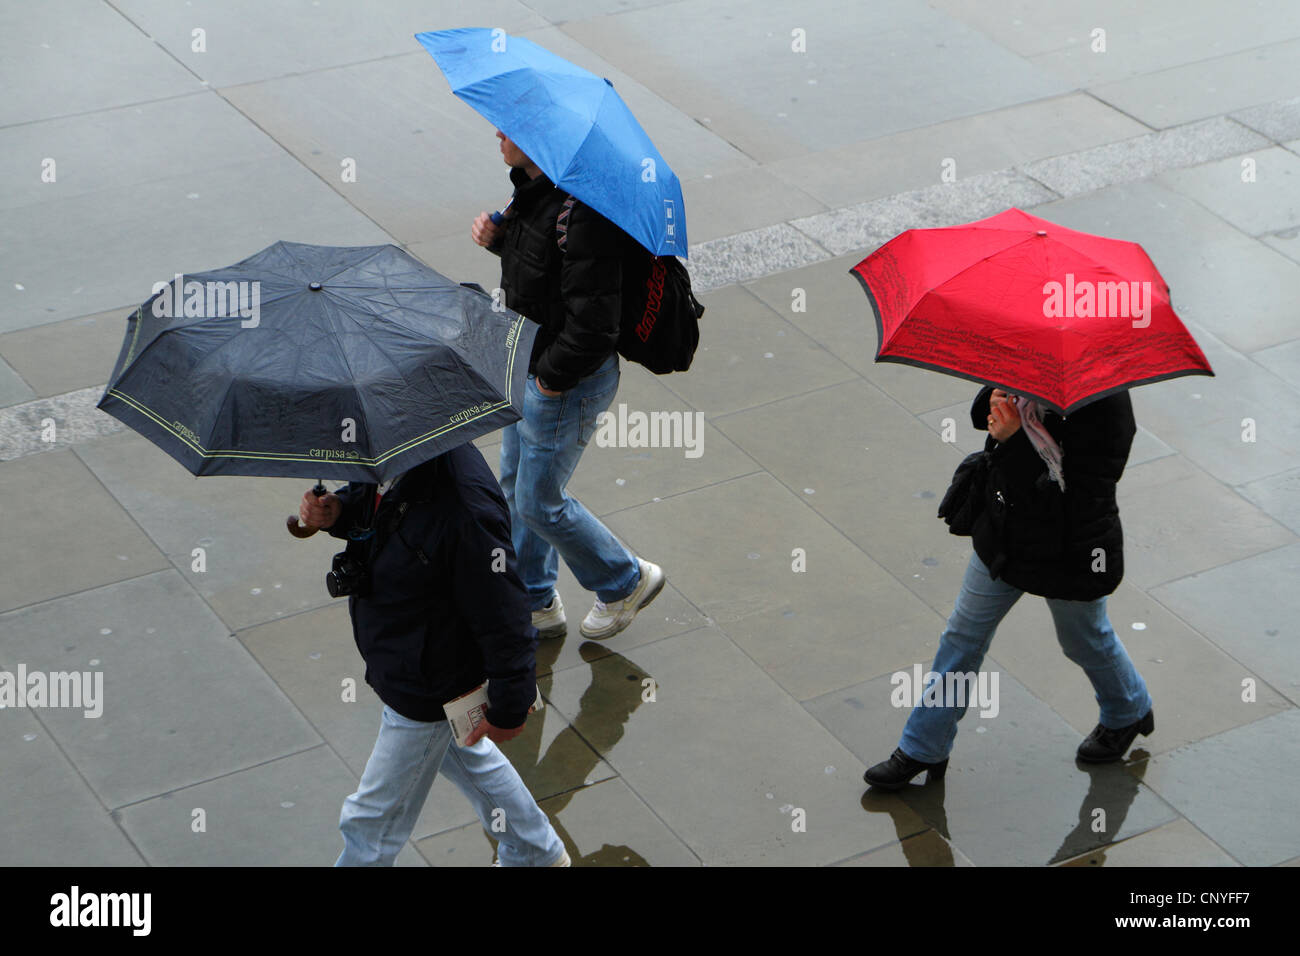 Les piétons sous la pluie, London, UK Banque D'Images